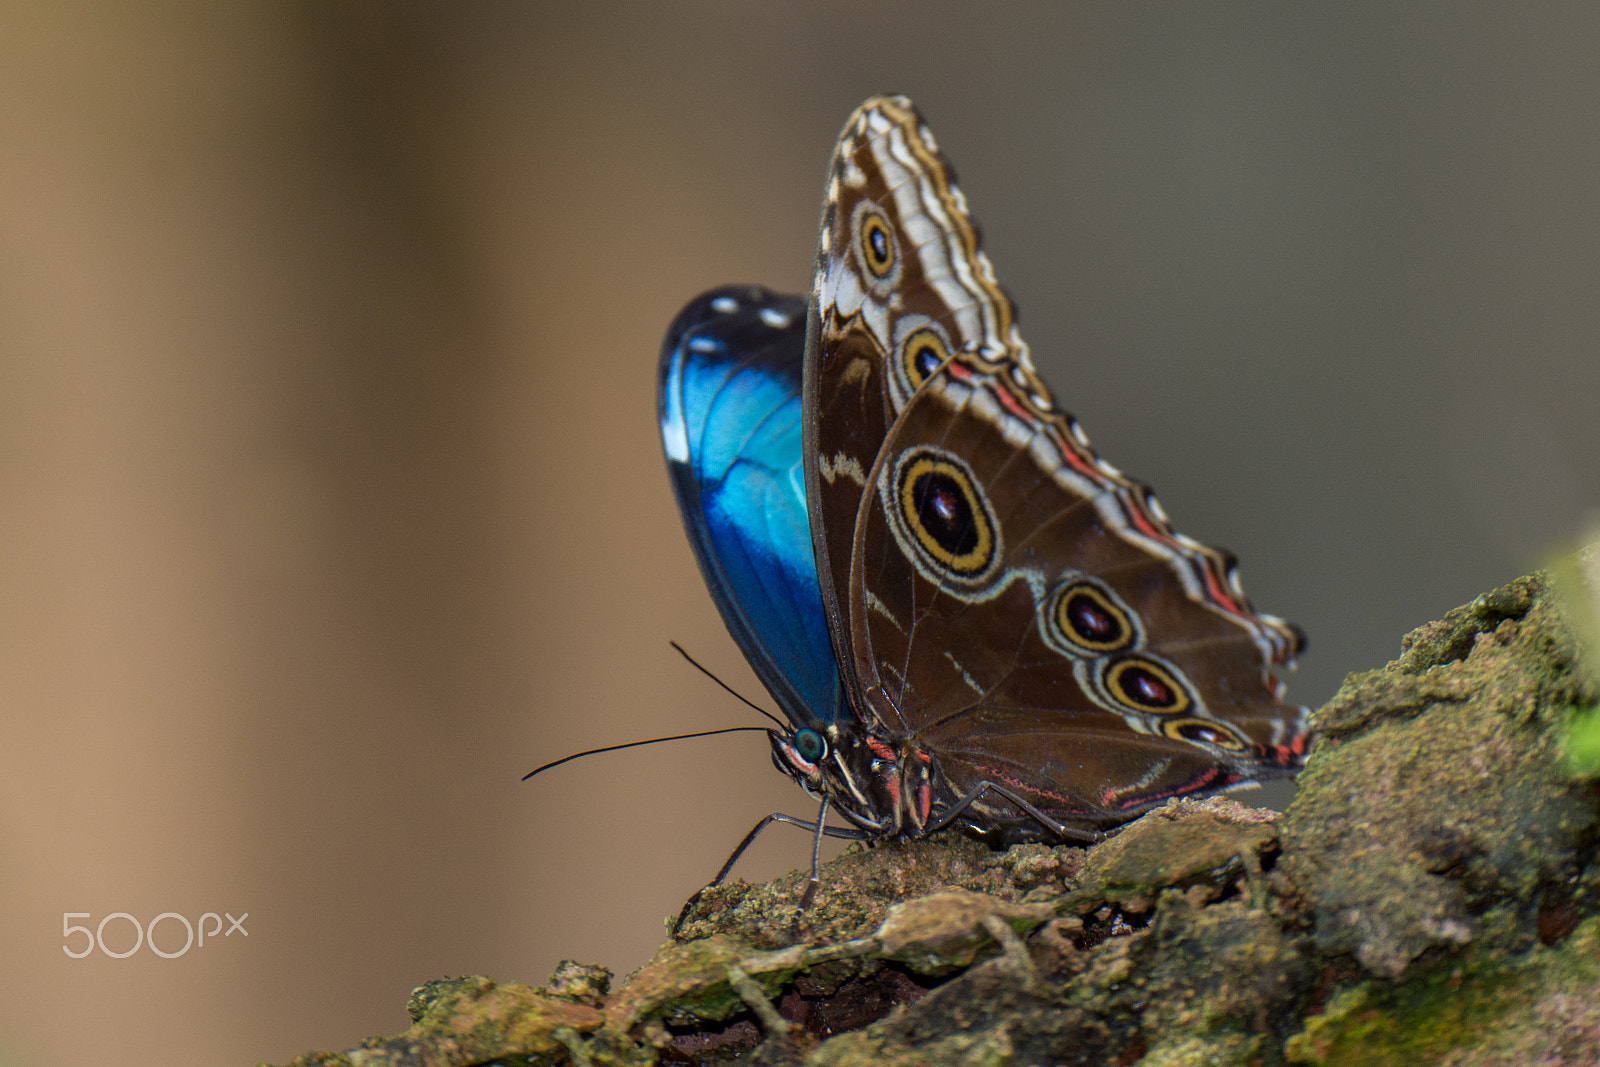 Nikon D7100 + Nikon AF-S Nikkor 80-400mm F4.5-5.6G ED VR sample photo. Blue morpho butterfly on a branch photography